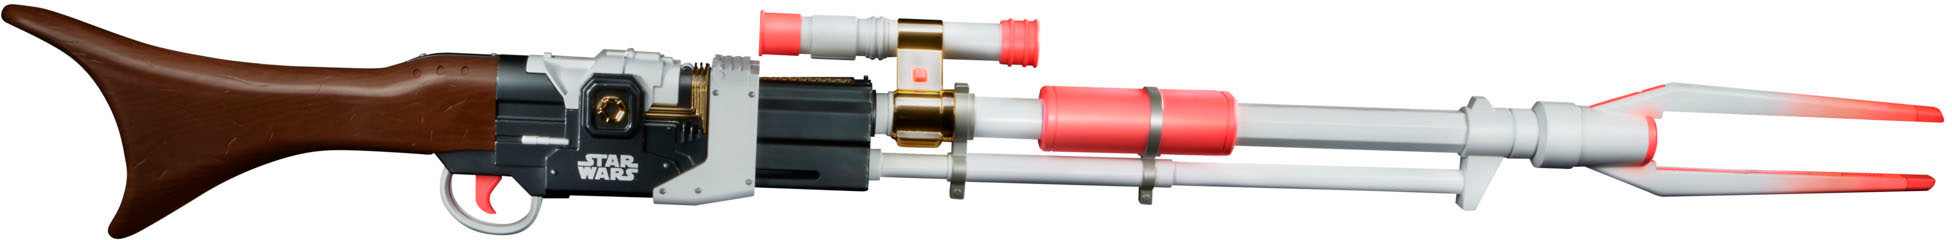 Nerf Star Wars Amban Phase-pulse Blaster, The Mandalorian, Scope, 10 Nerf  Elite Darts, 50.25 Inches Long - Nerf